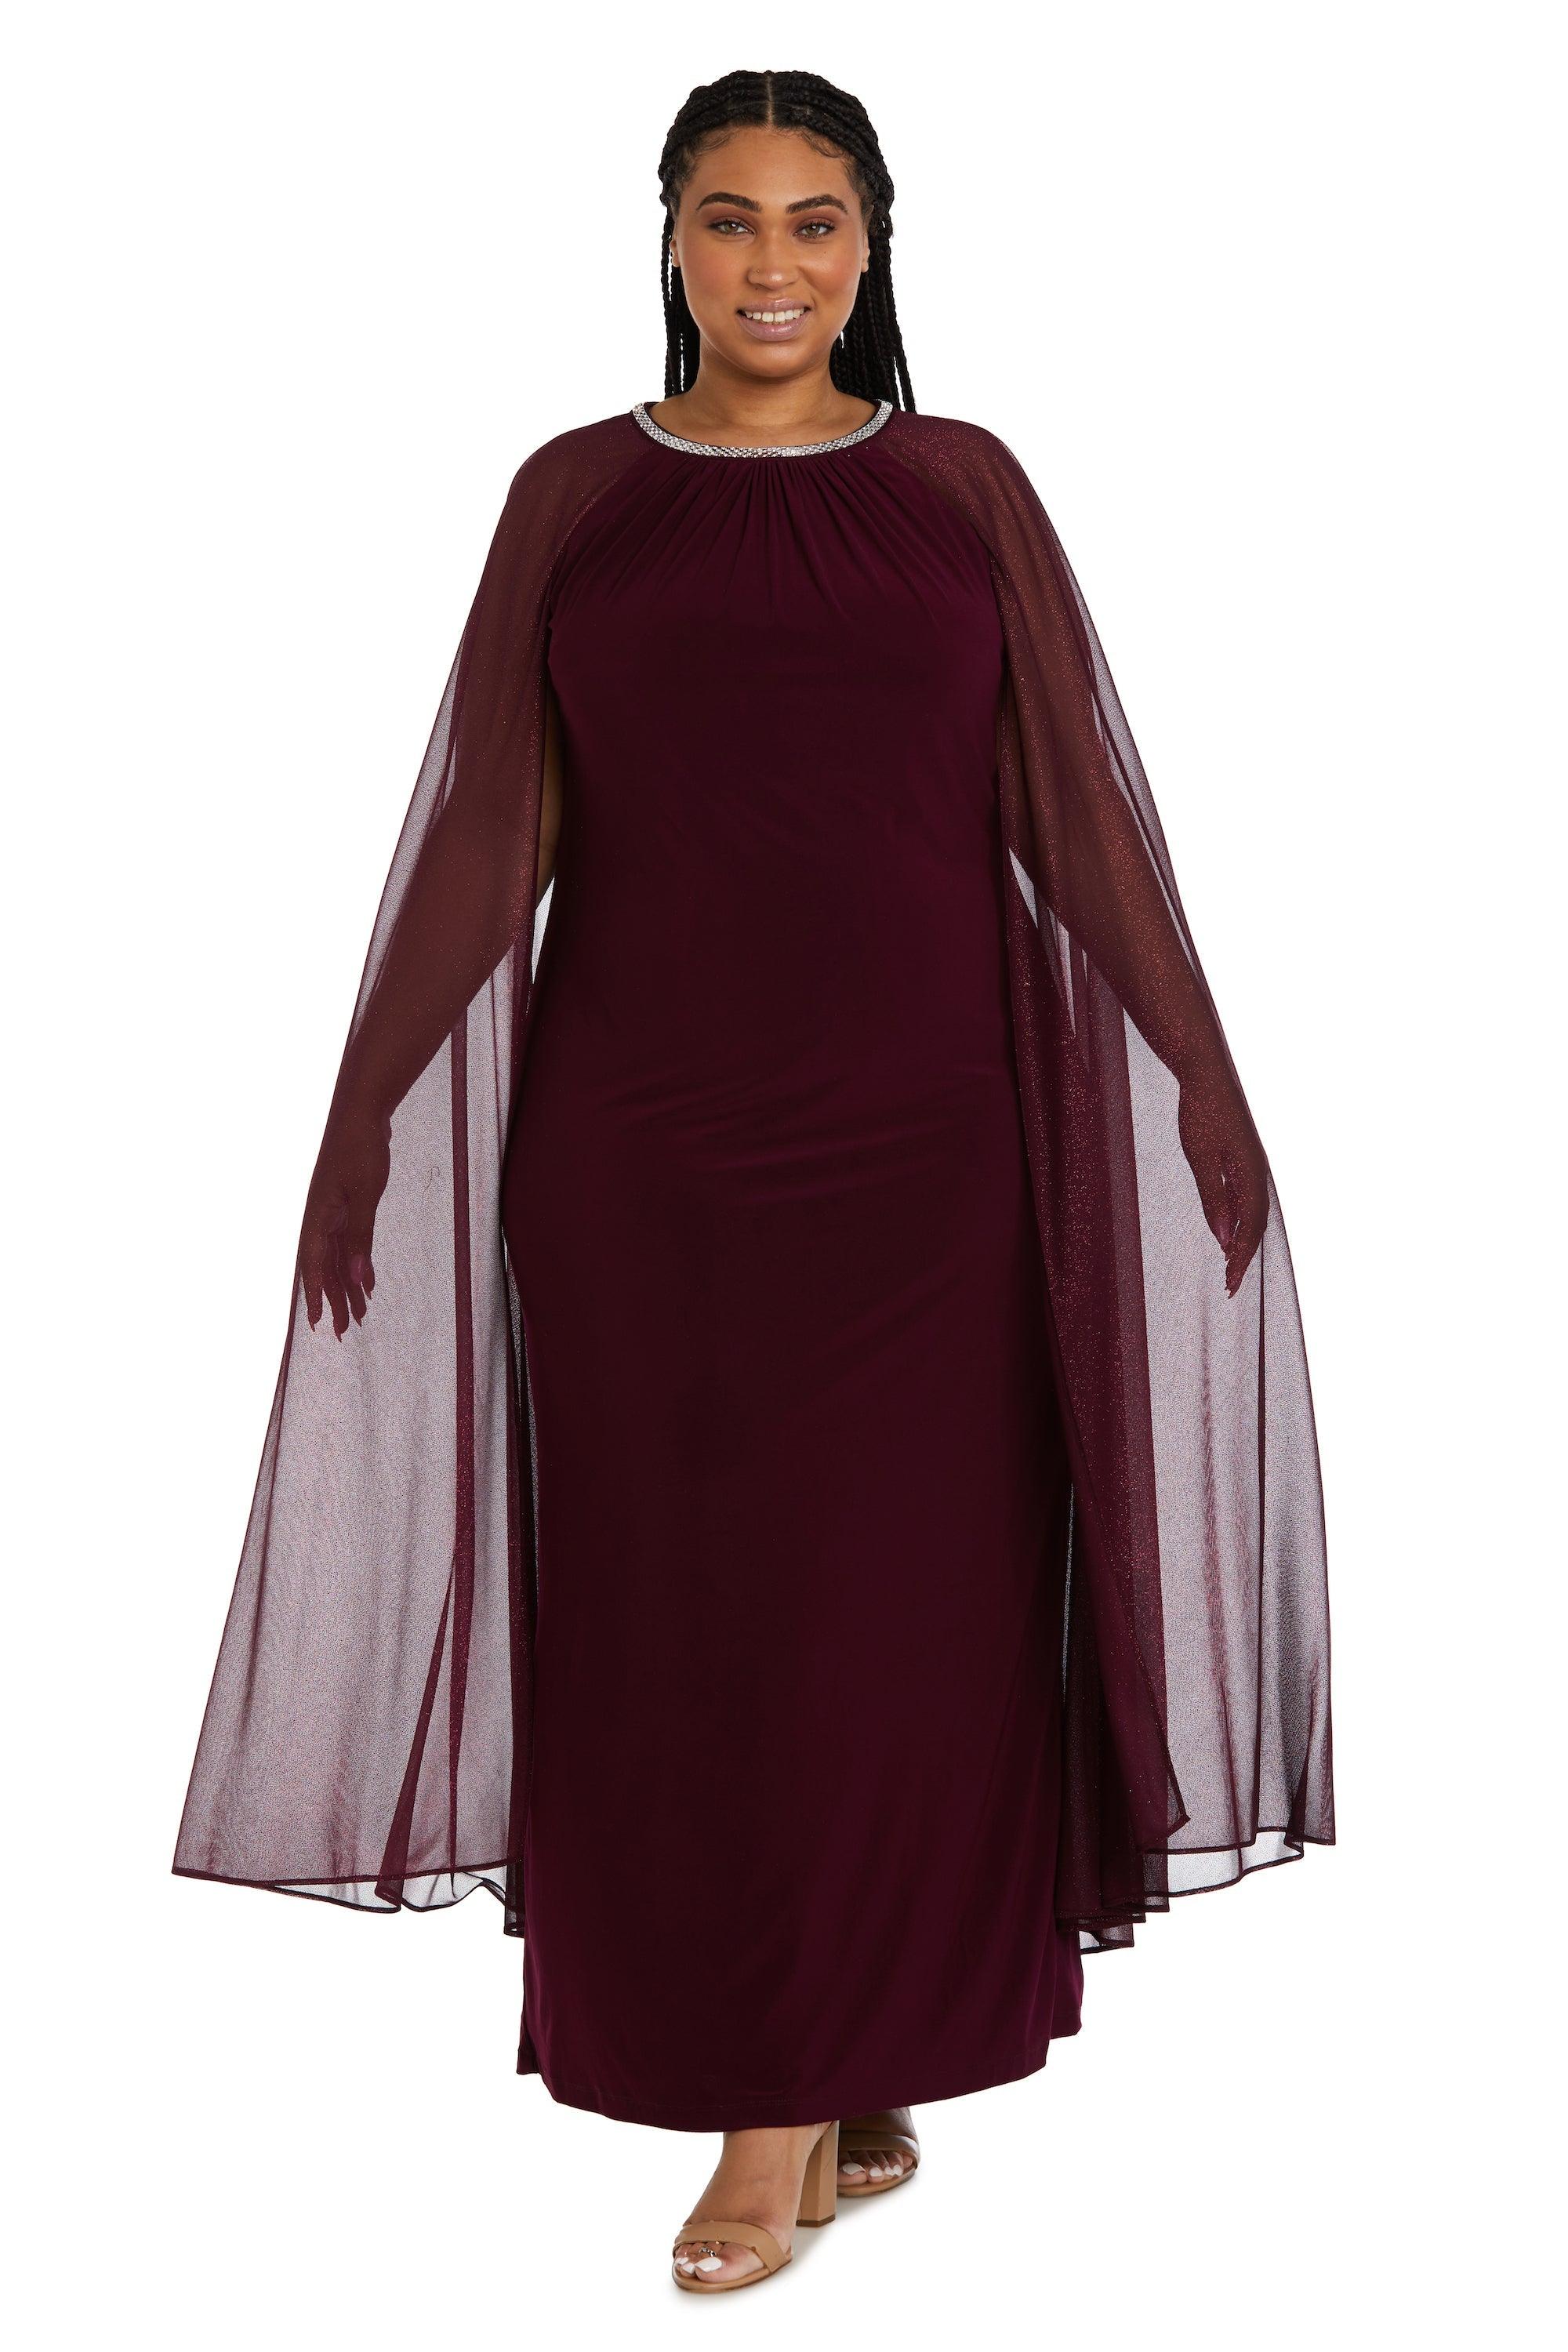 R&M Richards Long Plus Size Formal Cape Dress 2662W - The Dress Outlet